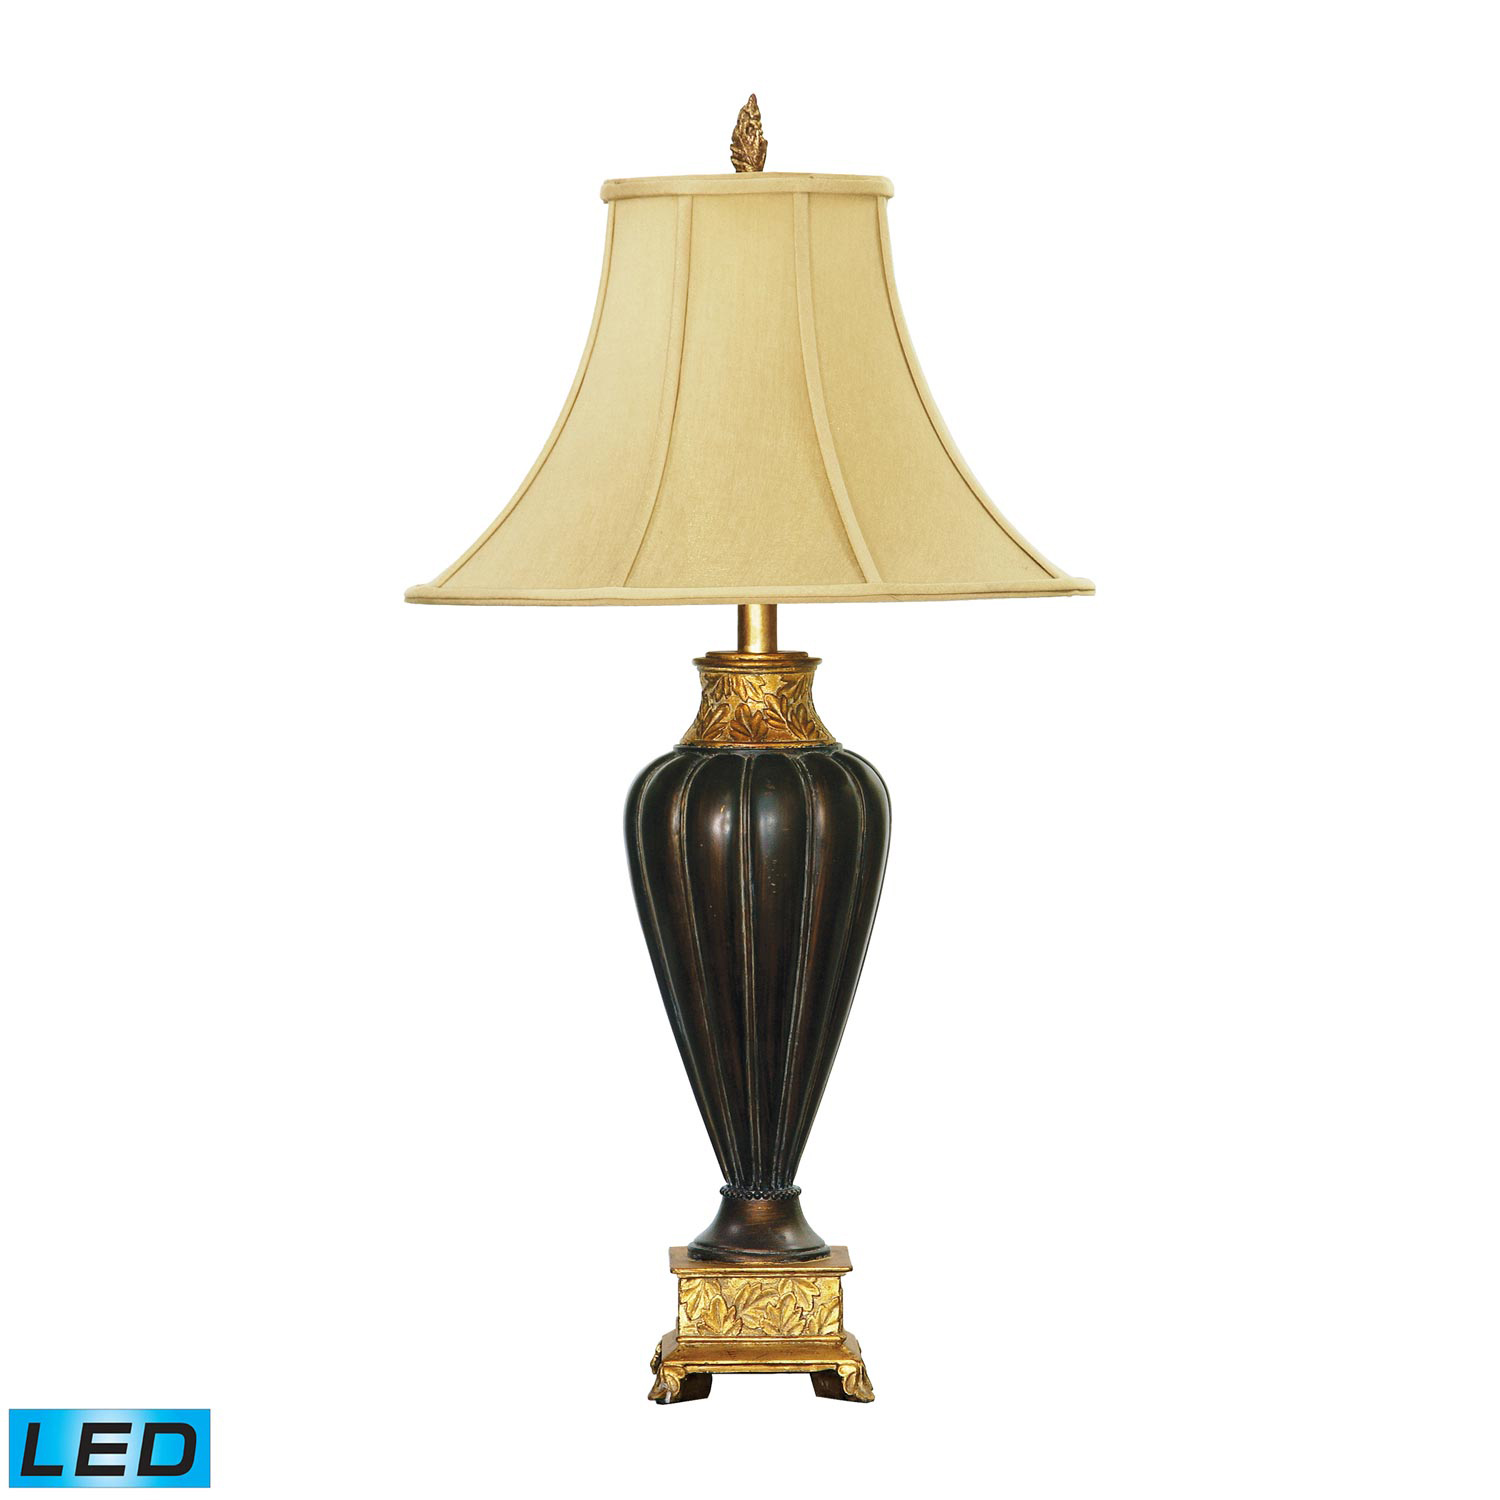 Elk Lighting 91-506-LED Fluted Leaf Table Lamp - Black / Gold Leaf